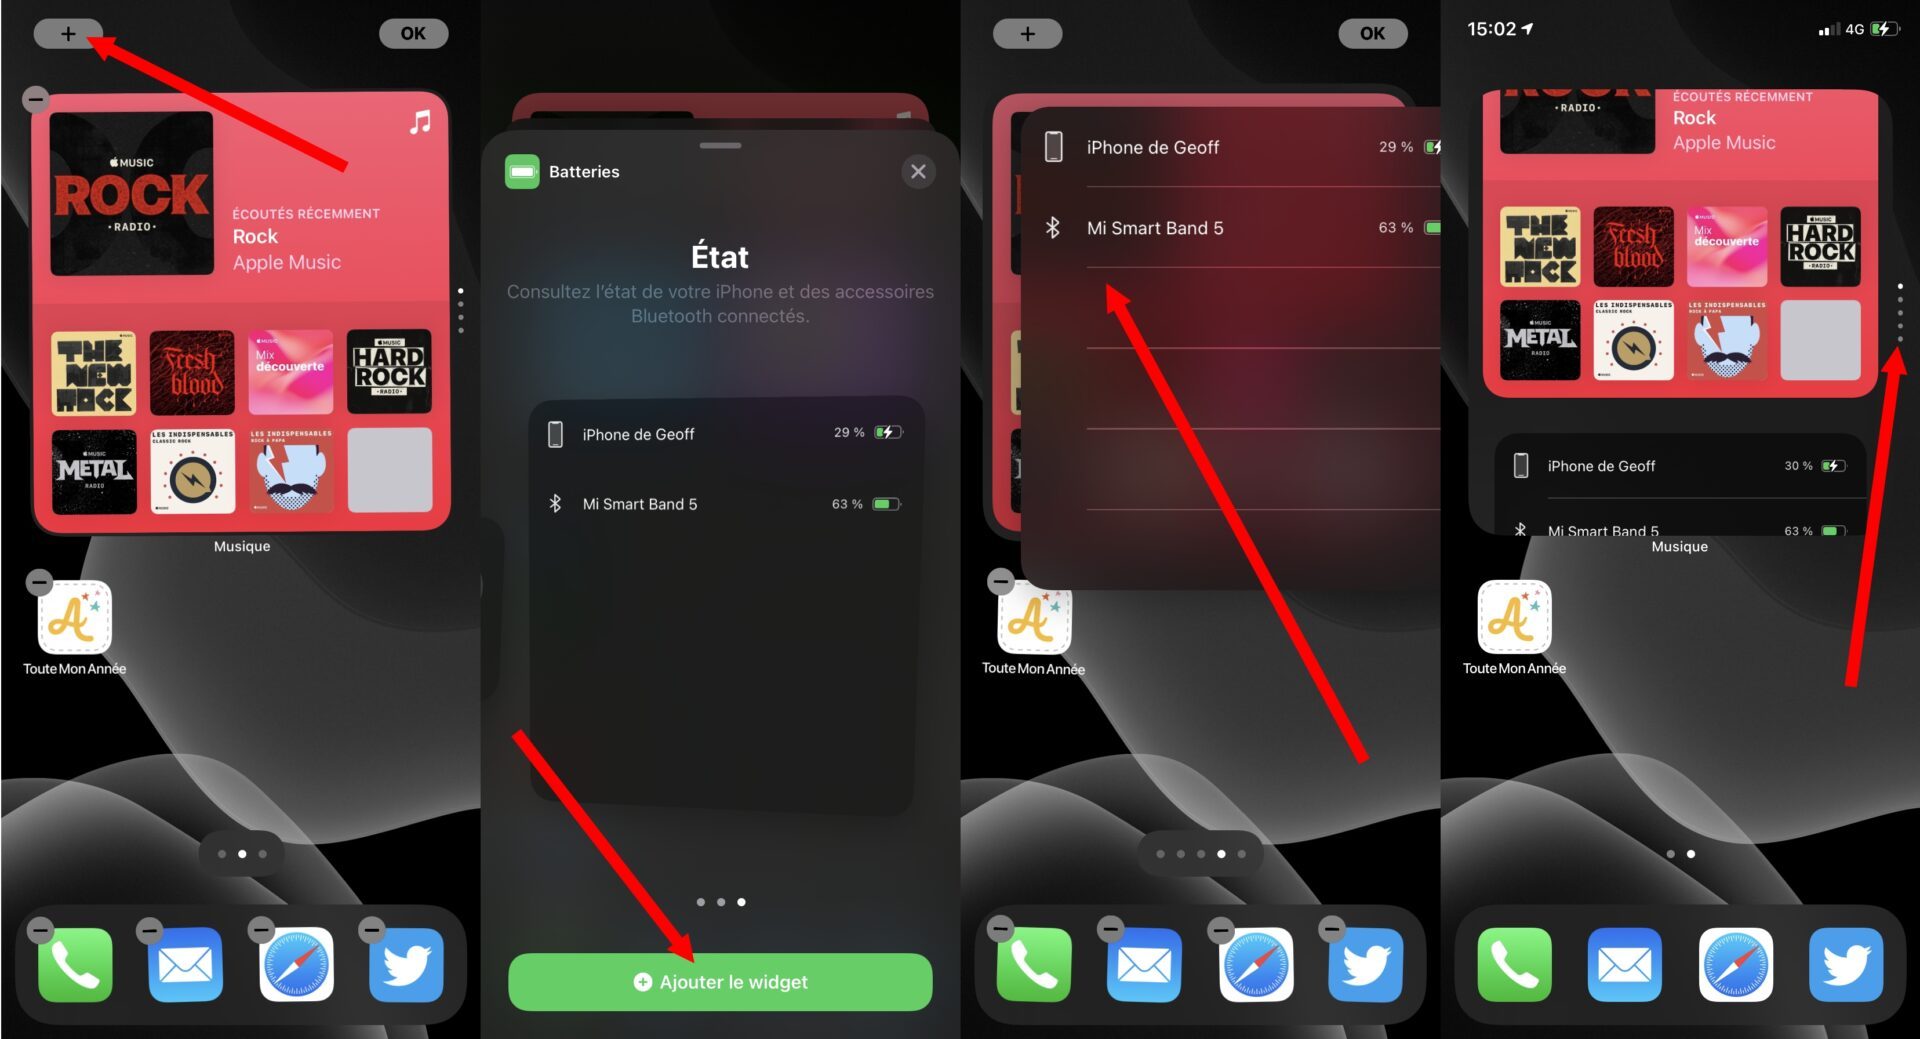 Ajouter et modifier des widgets sur votre iPhone - Assistance